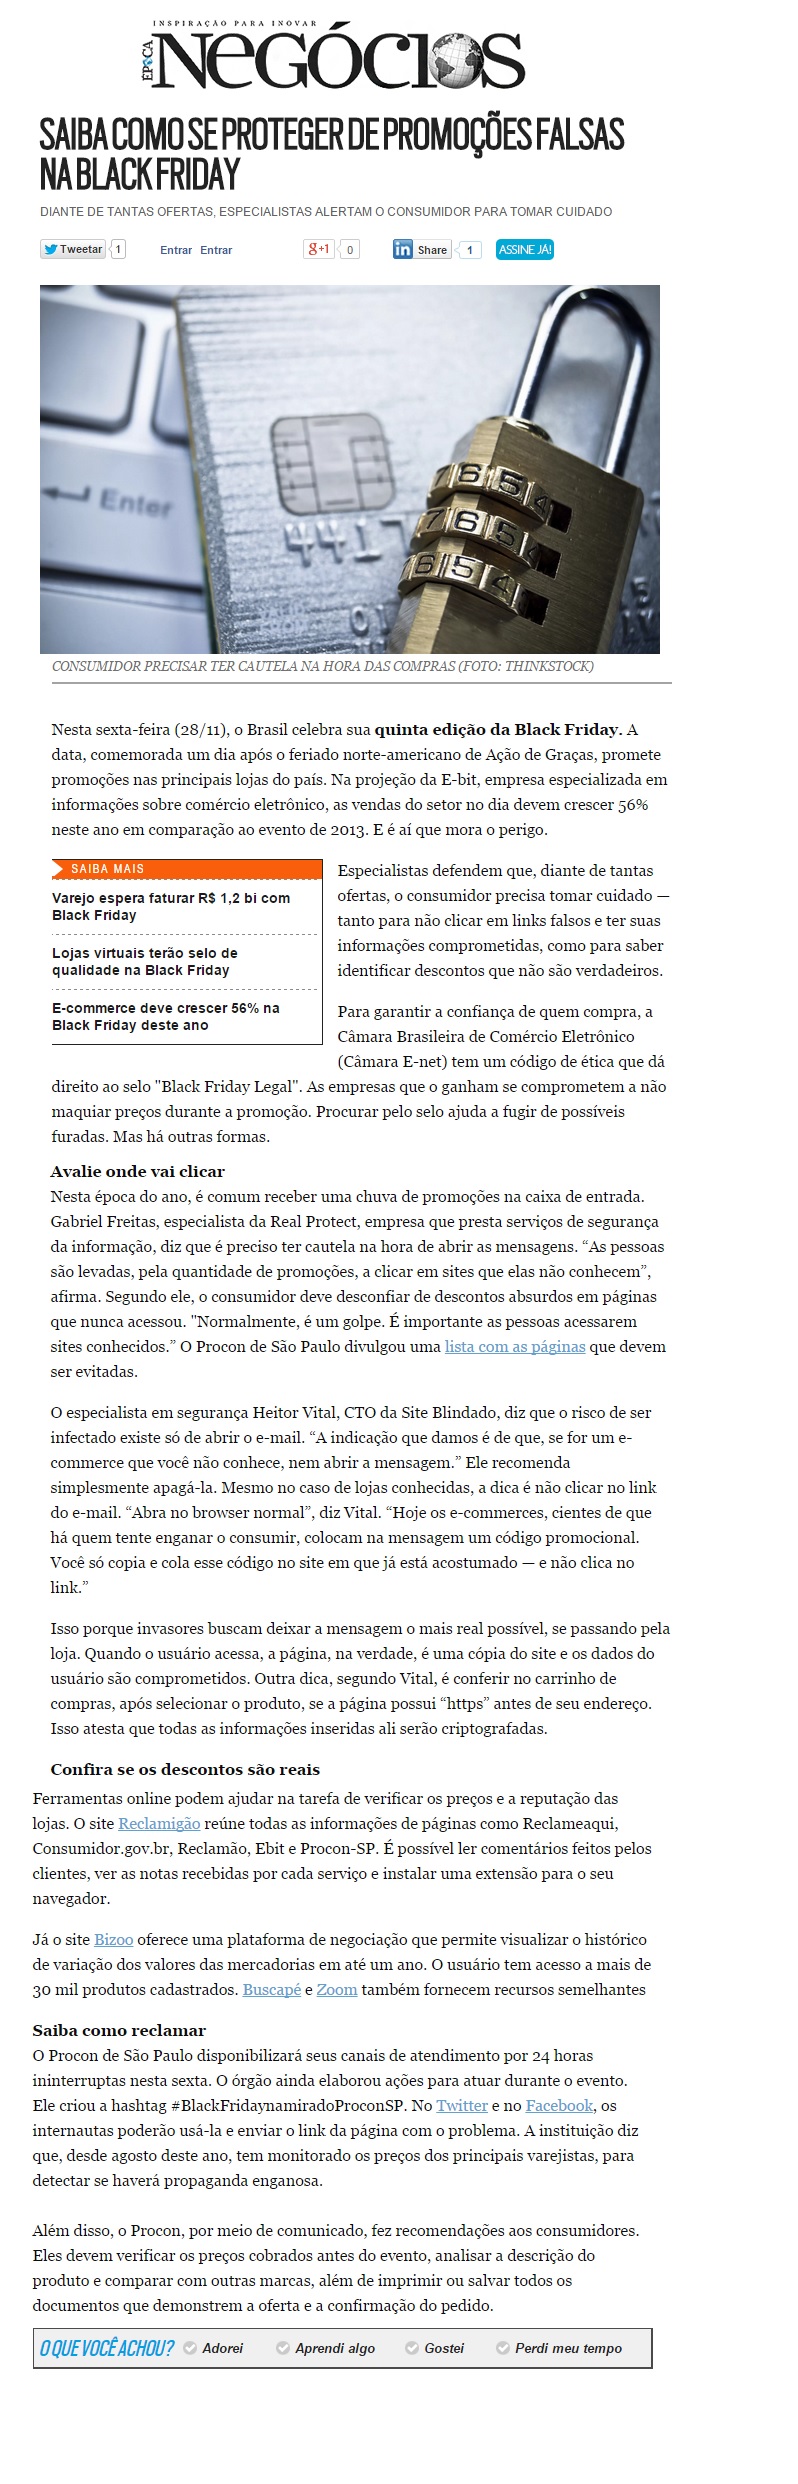 Site Blindado na Época Negócios Online 28.11.2014